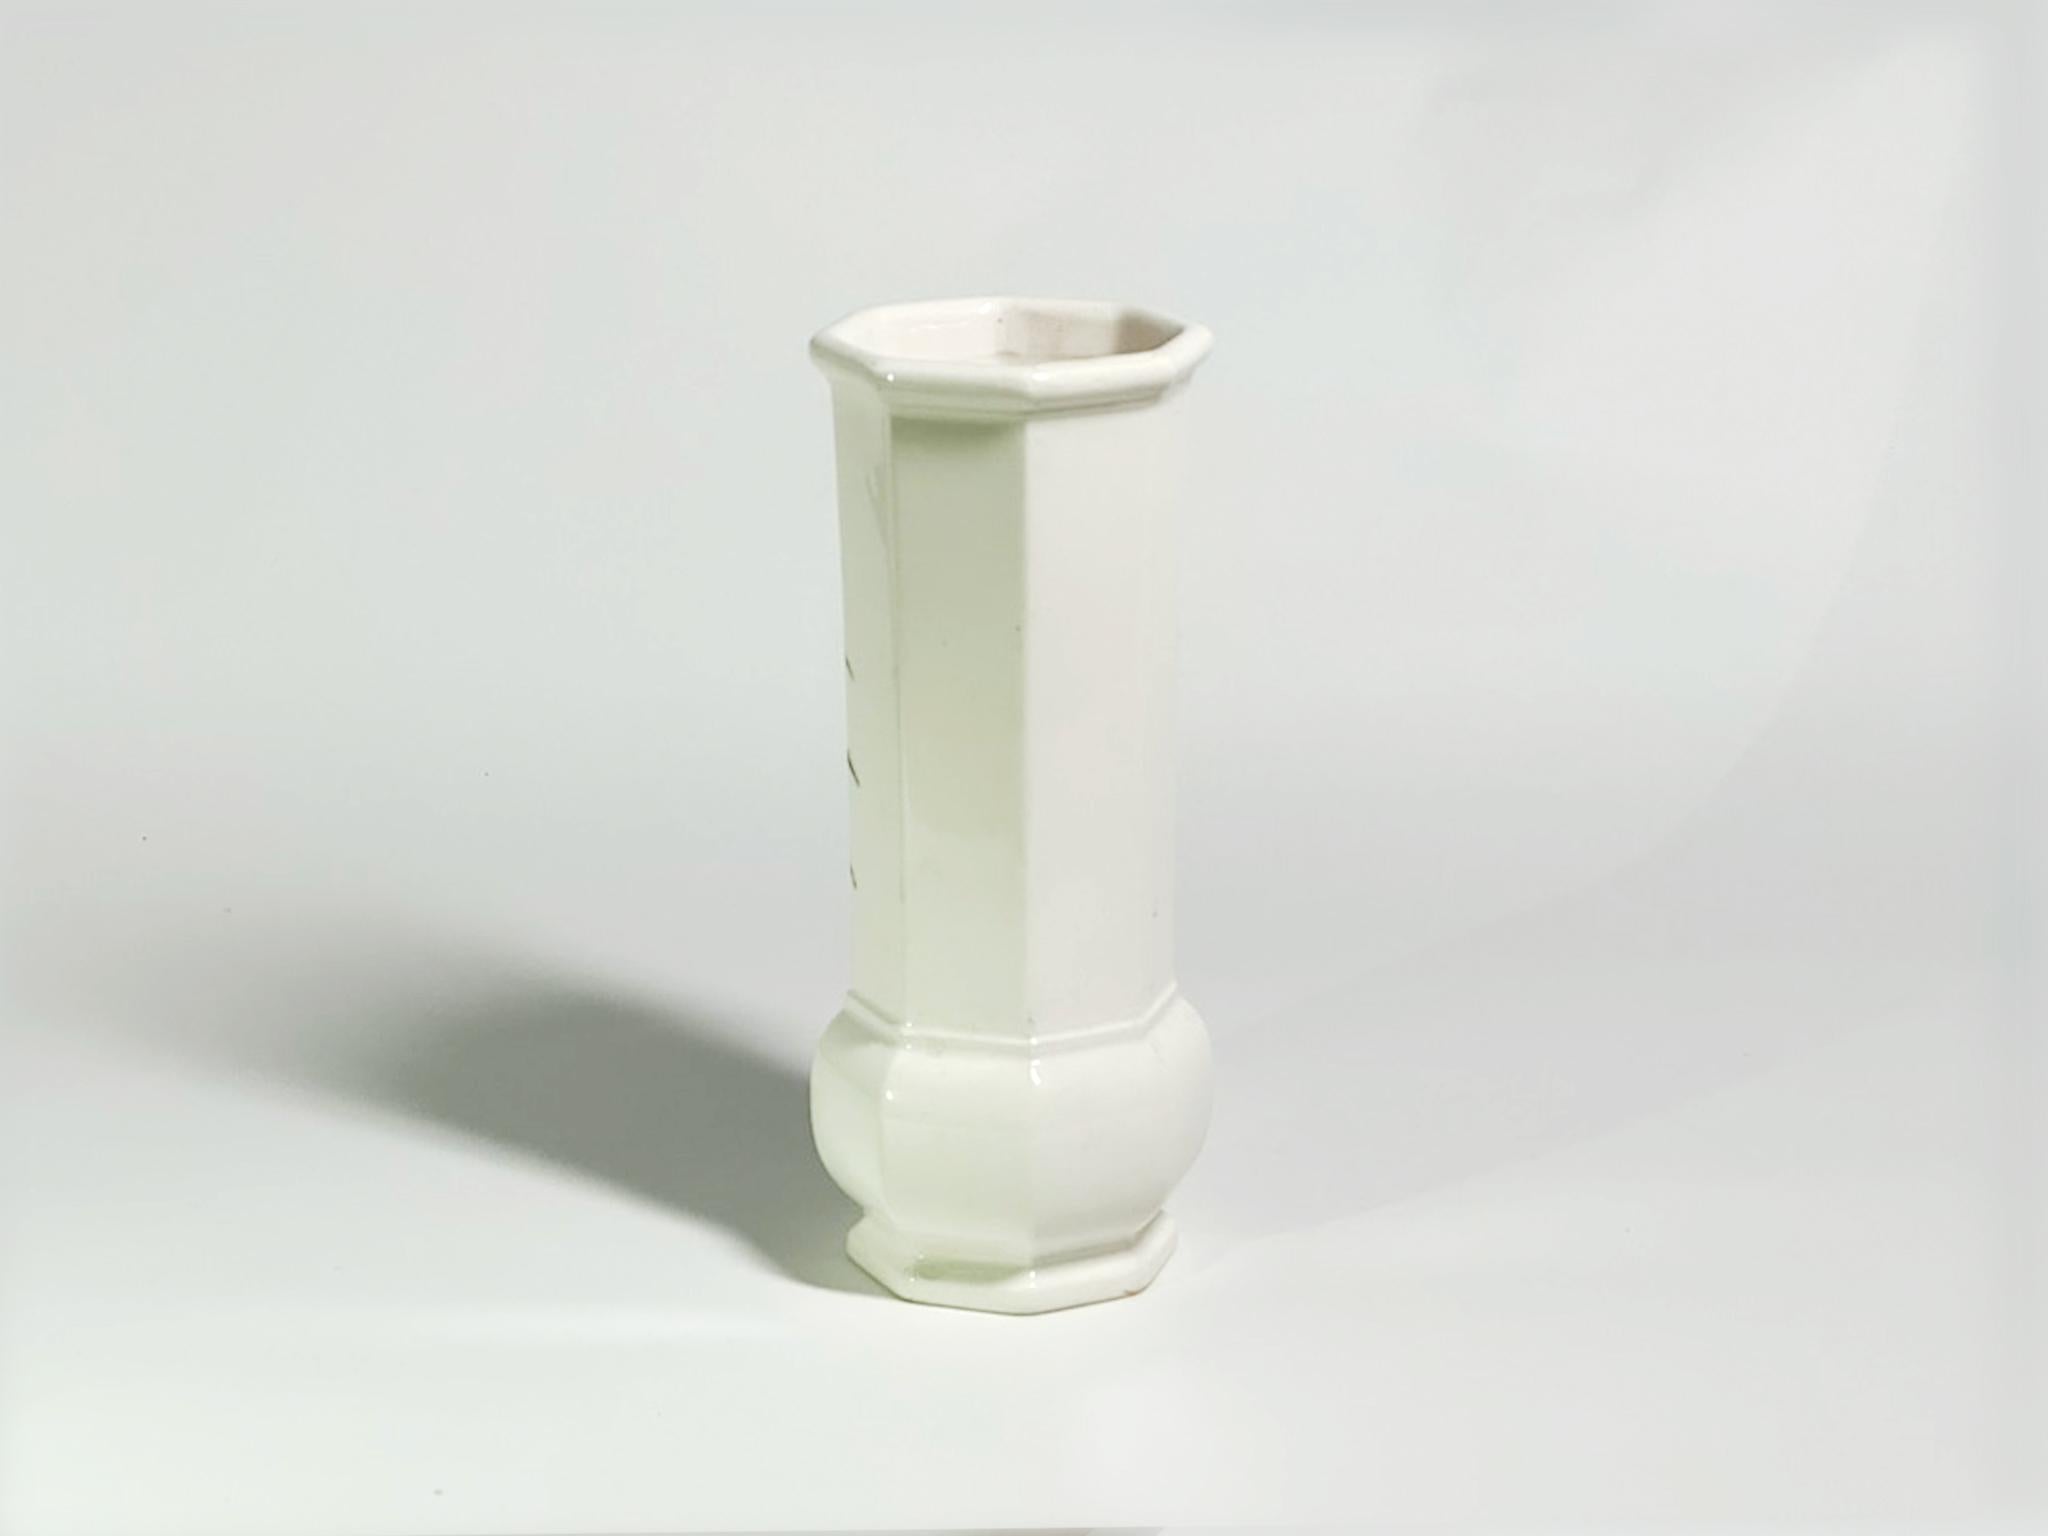 Störung #04, 2023 von Yongwon Noh
Aus der Serie Glitch
Keramik
Größe: 6,7 Zoll. H x 2.7 in. W x 2.7 in. D
Gewicht: 1kg Unverpackt
Einzigartiges Stück
Signatur auf dem Boden der Vase

Die Glitch-Serie ist eine zeitgenössische Neuinterpretation der